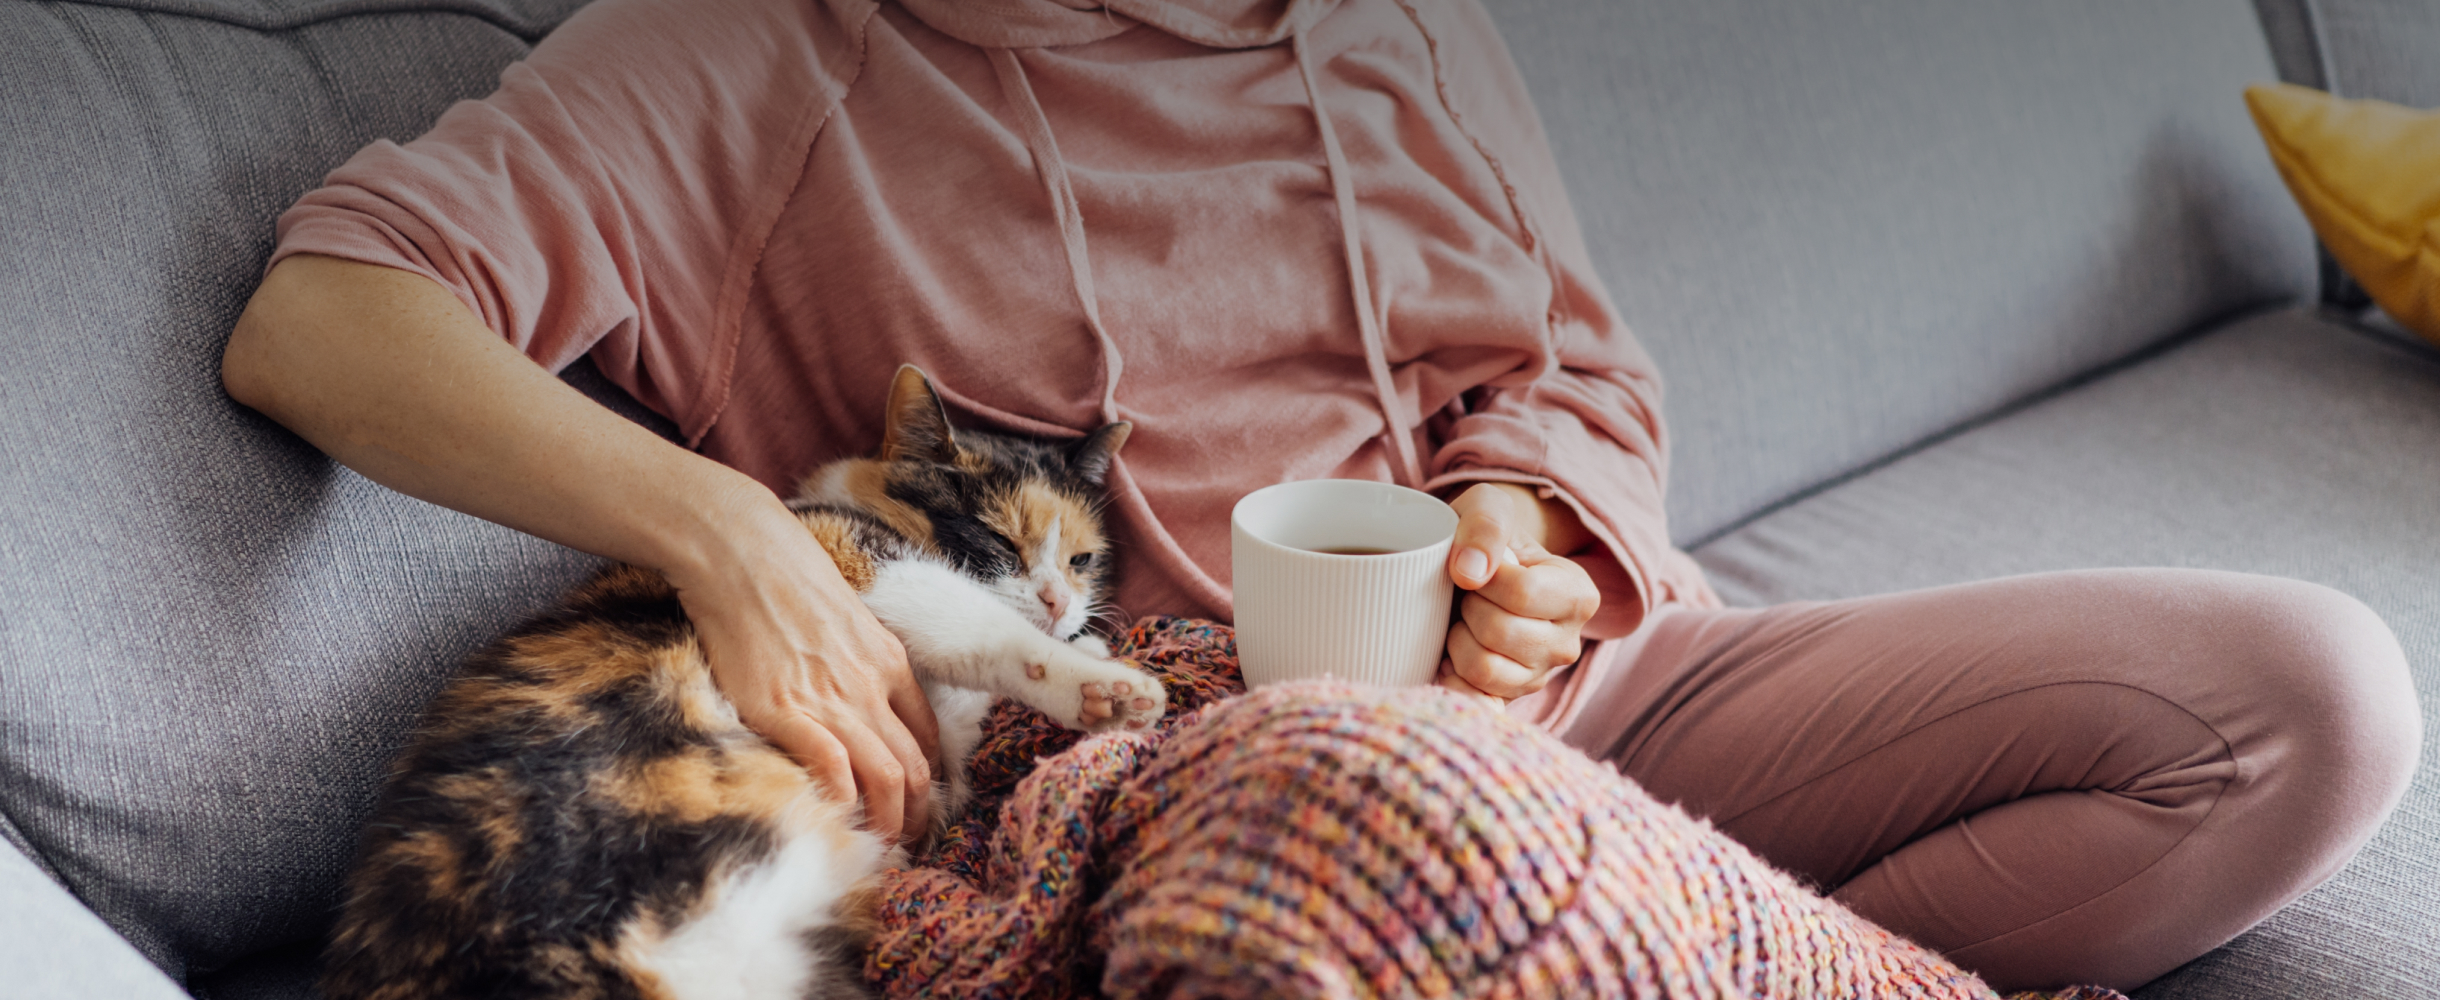 «Носки, толстовка и горячий чай»: 7 проверенных способов согреться дома в холодные дни